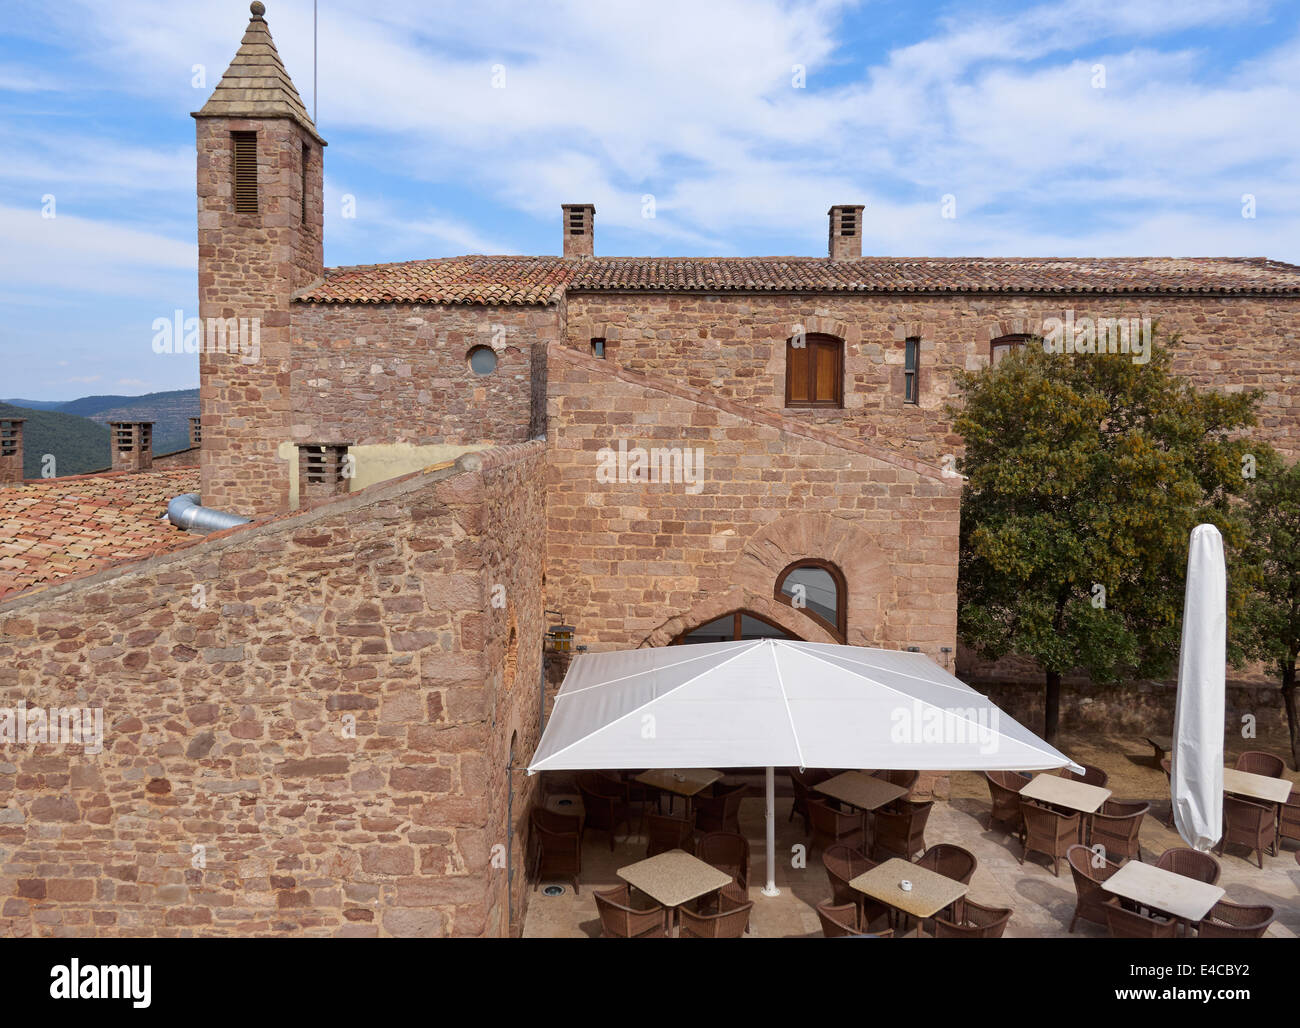 Parador de Cardona, a medieval castle set high on a hilltop in Catalonia, Spain Stock Photo